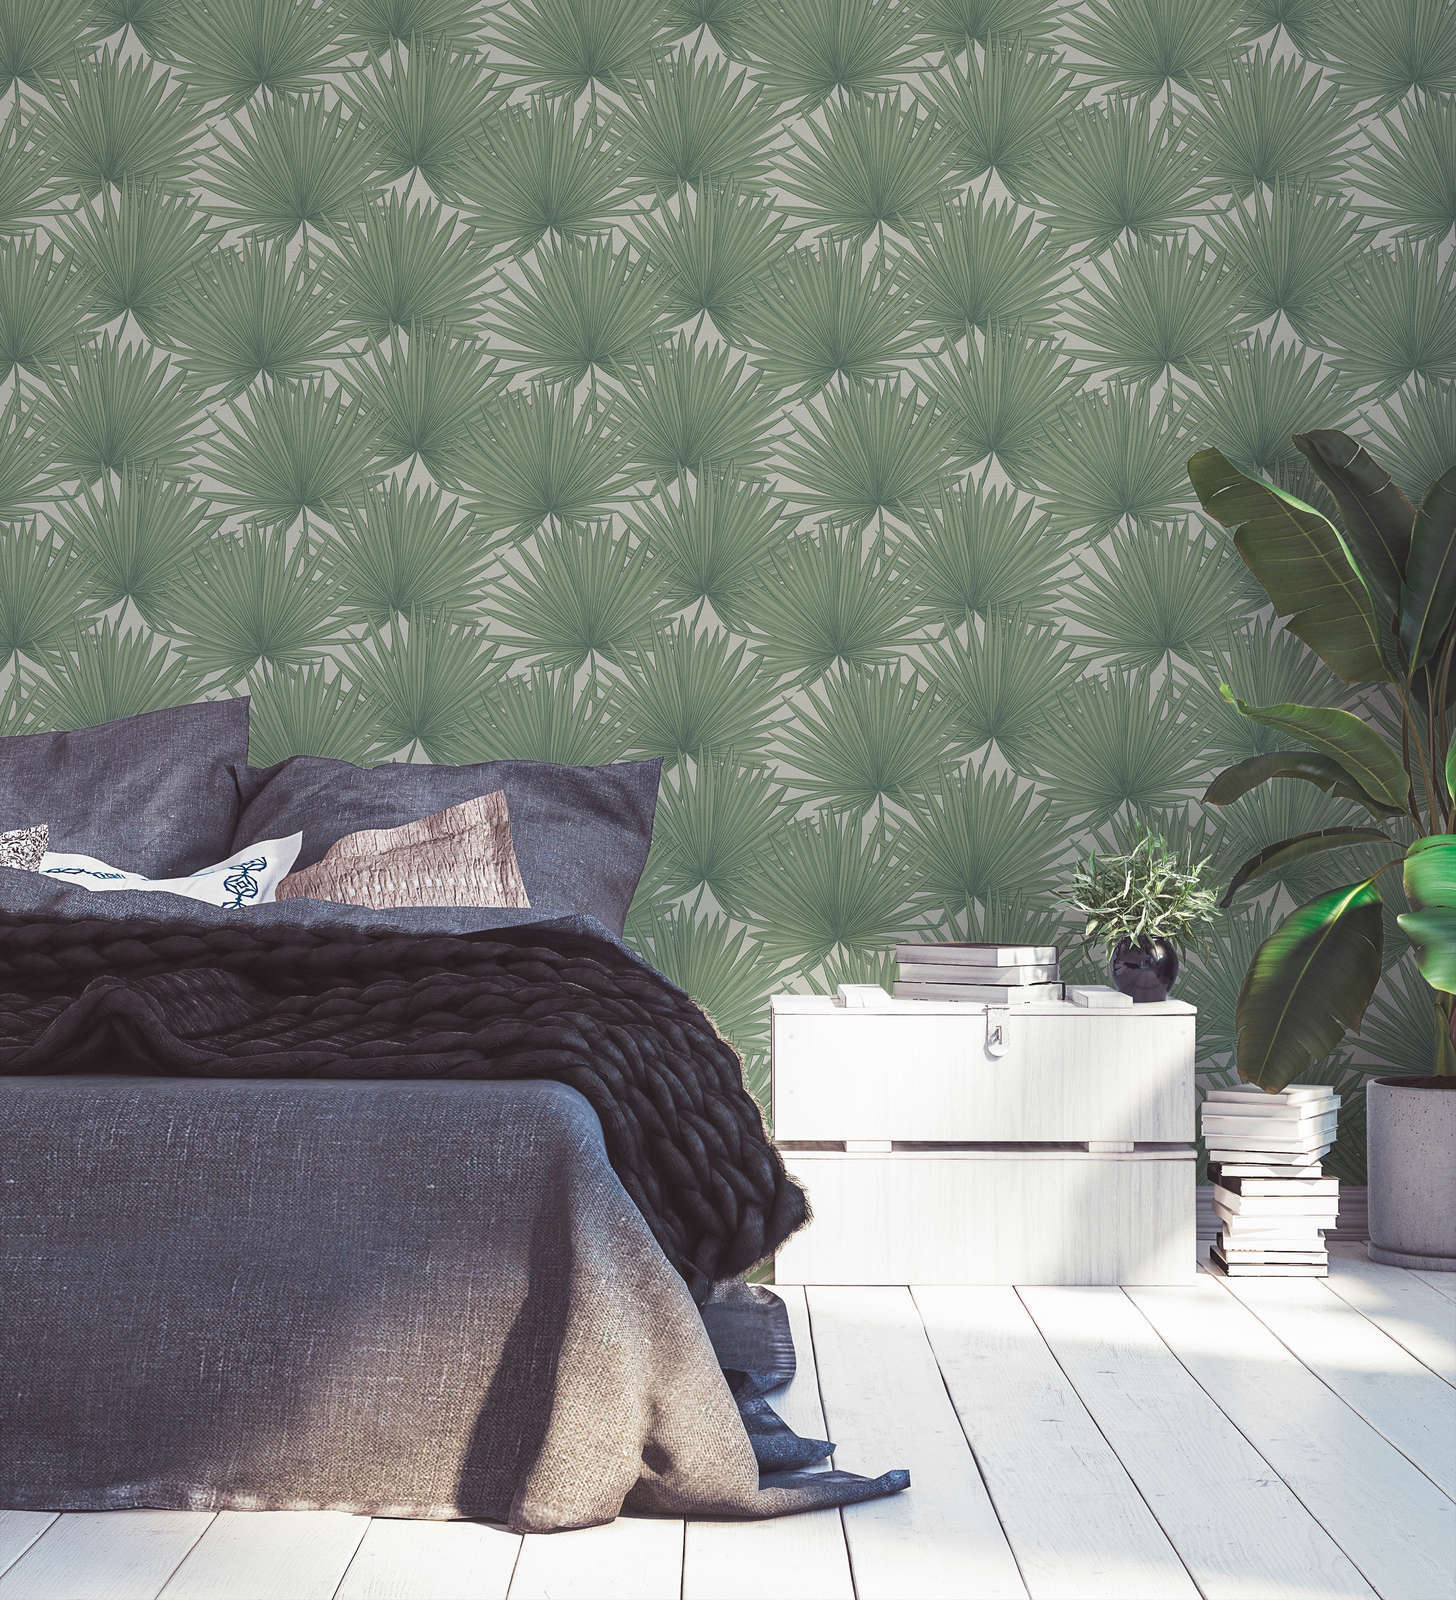             Jungle style non-woven wallpaper - green, white
        